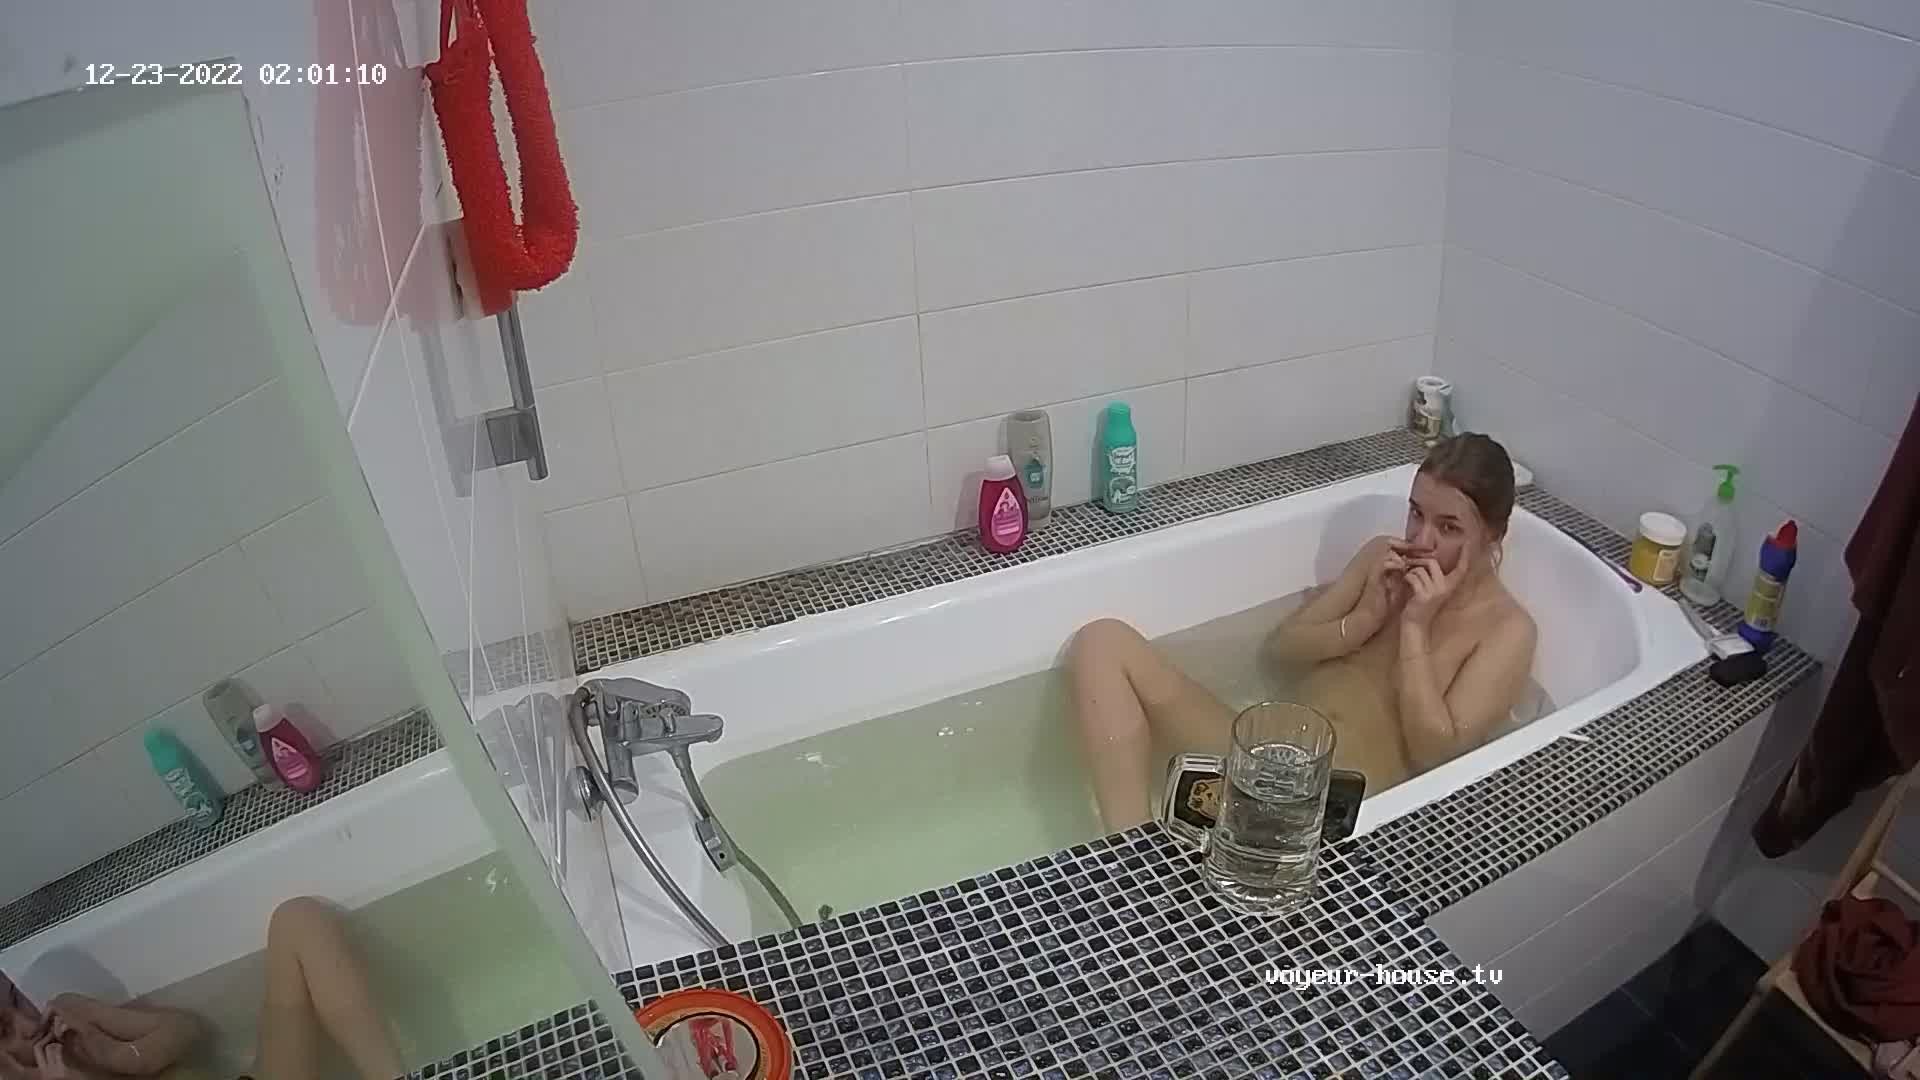 Shana bath, Dec23/22